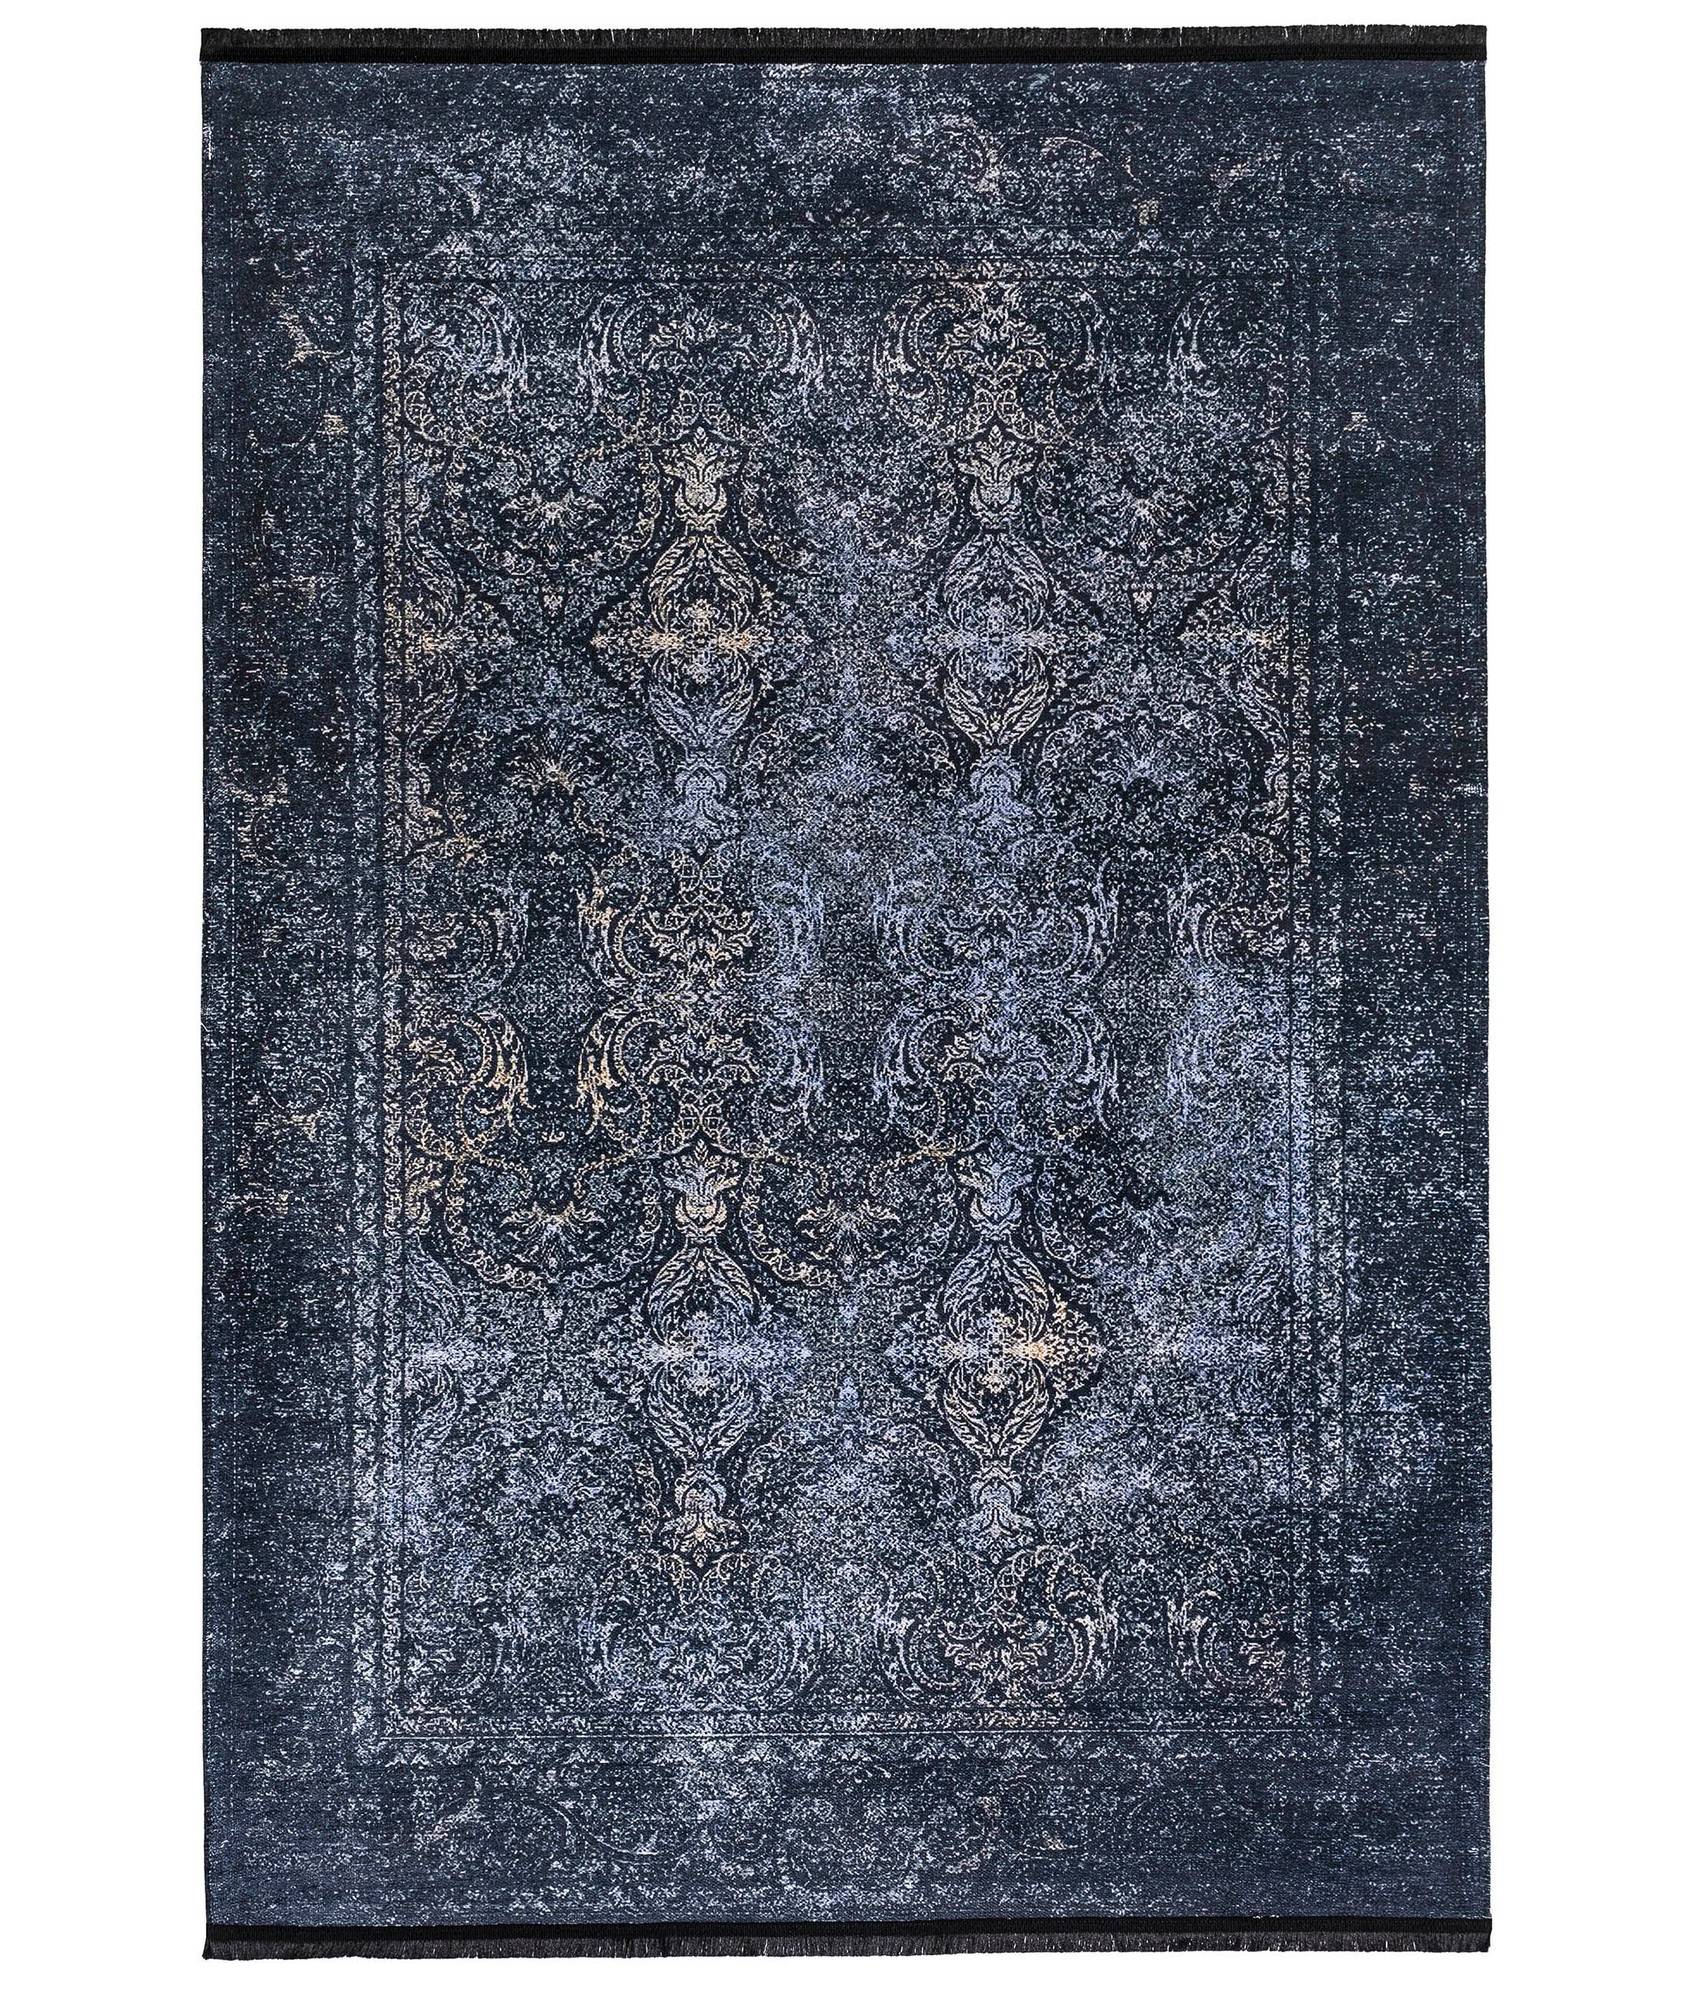 Hadorn Teppich 160x230cm Viktorianisches Muster Blau und Schwarz